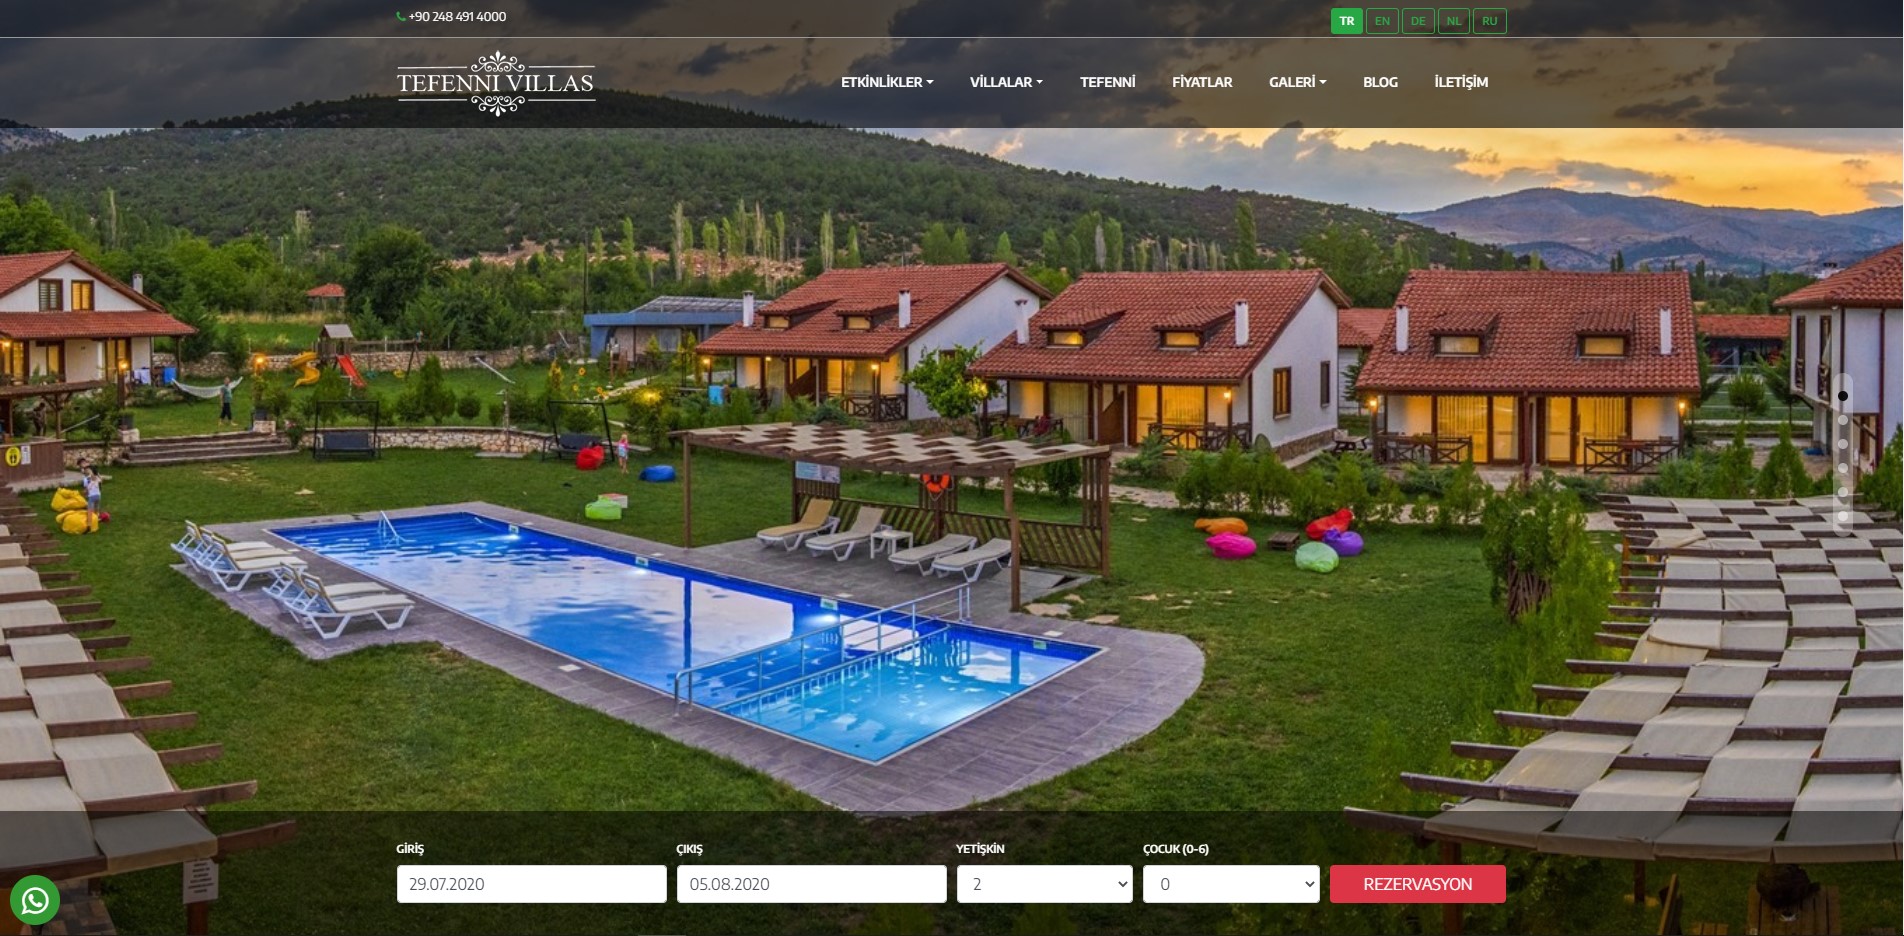 Tefenni Villas Web sitesi online rezervasyon sistemi ile yenilendi